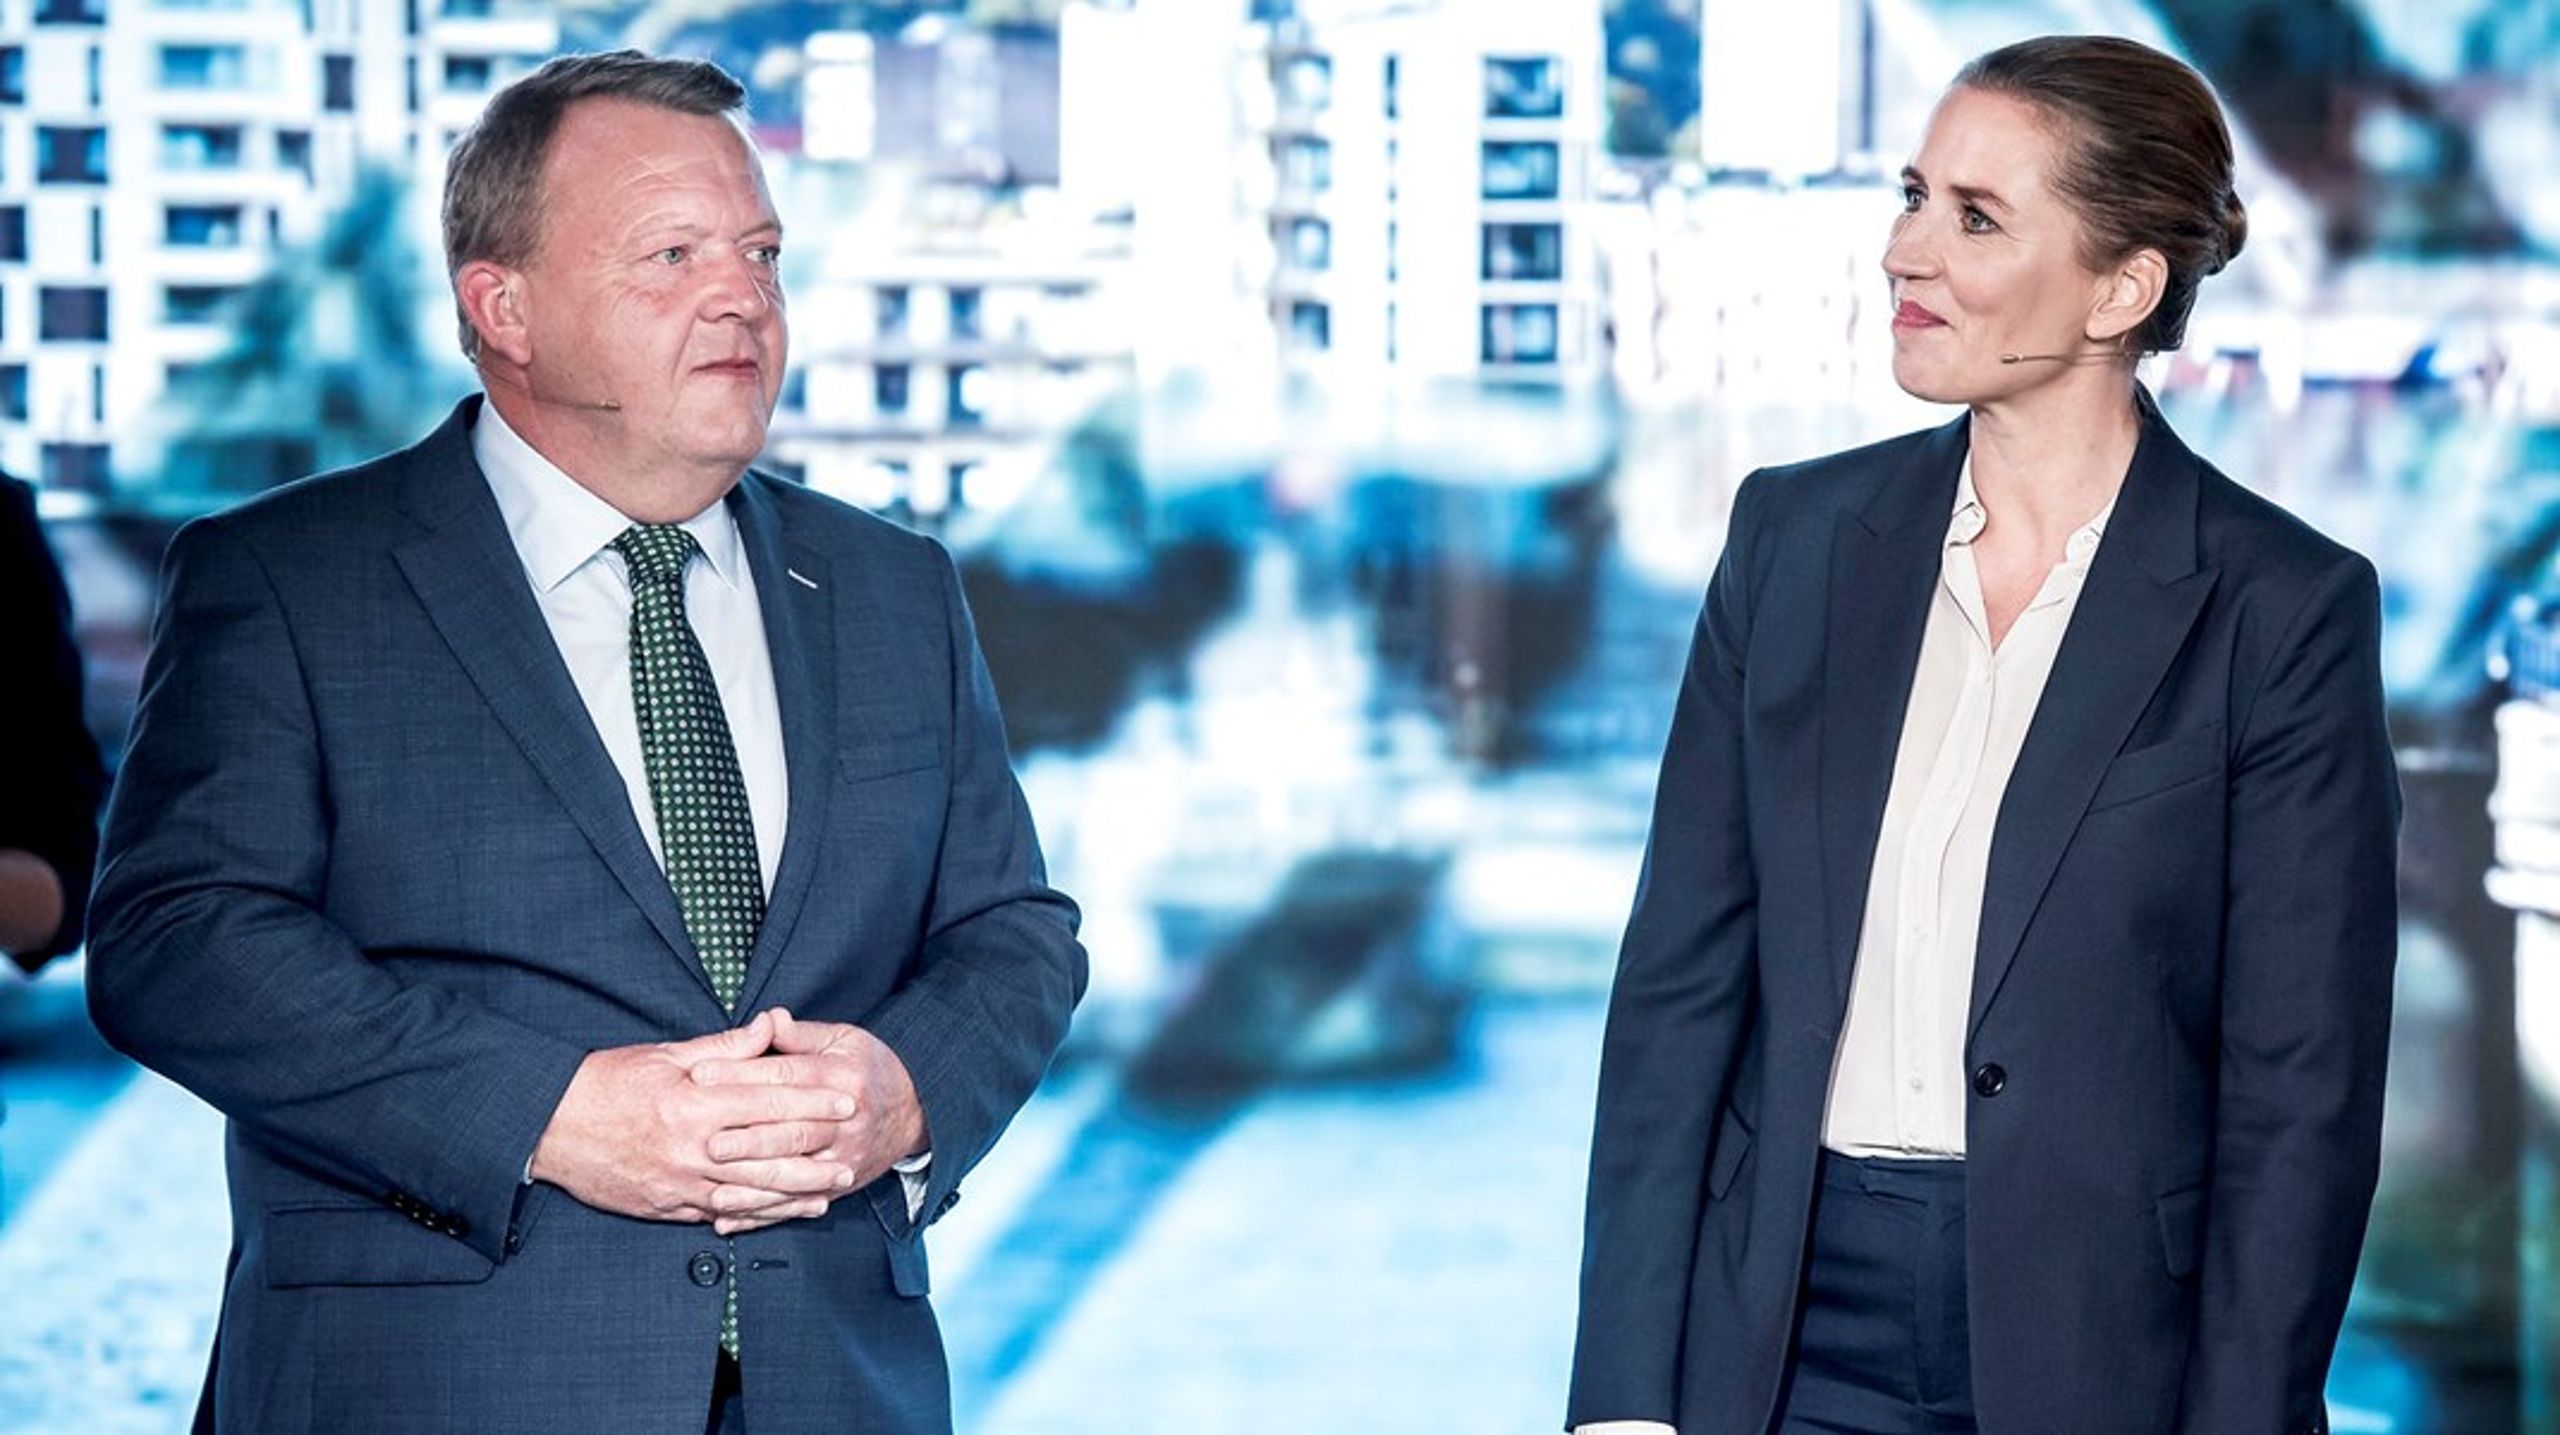 Lars Løkke Rasmussen (M) og Mette Frederiksen (S) stod skarpt over for hinanden i sidste valgkamp. Men efter et nyt valg kan de få brug for hinanden.